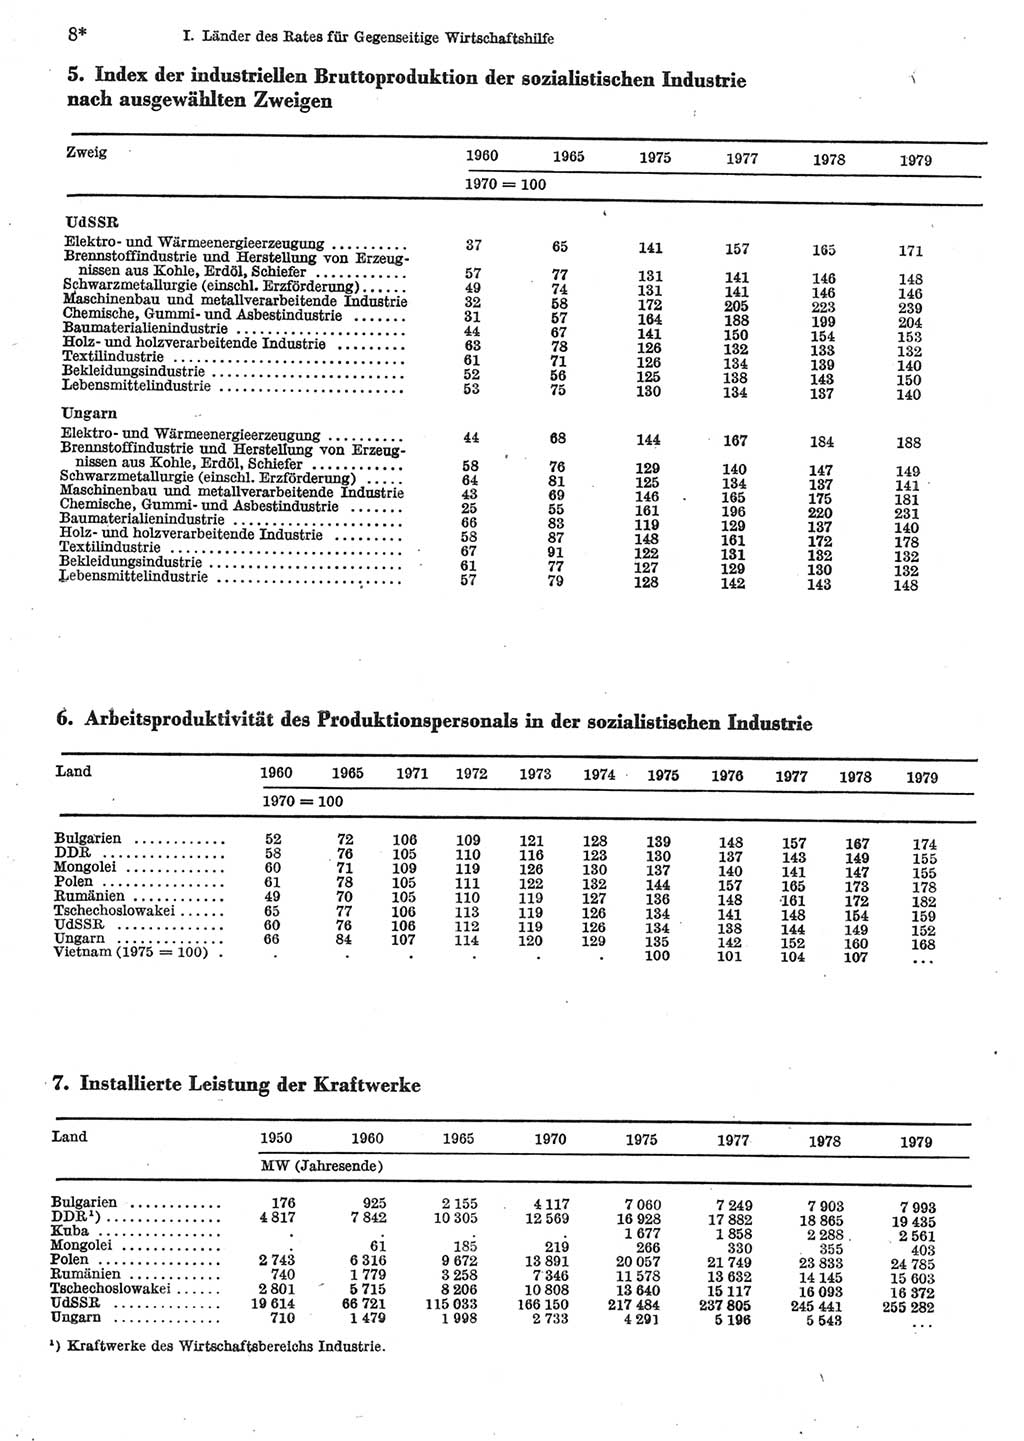 Statistisches Jahrbuch der Deutschen Demokratischen Republik (DDR) 1981, Seite 8 (Stat. Jb. DDR 1981, S. 8)